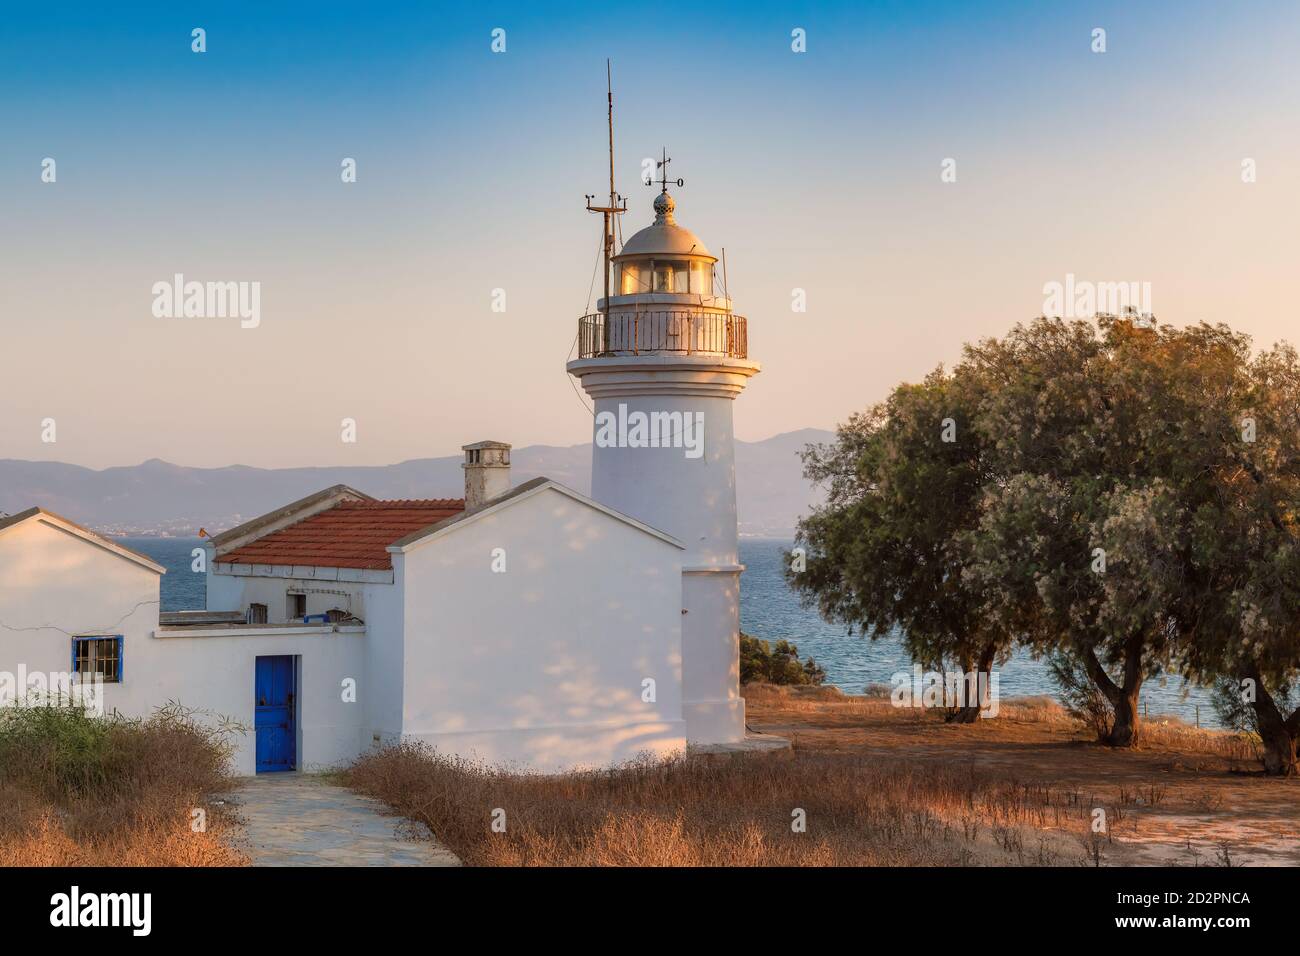 Lighthouse on Aegean sea at sunset Stock Photo